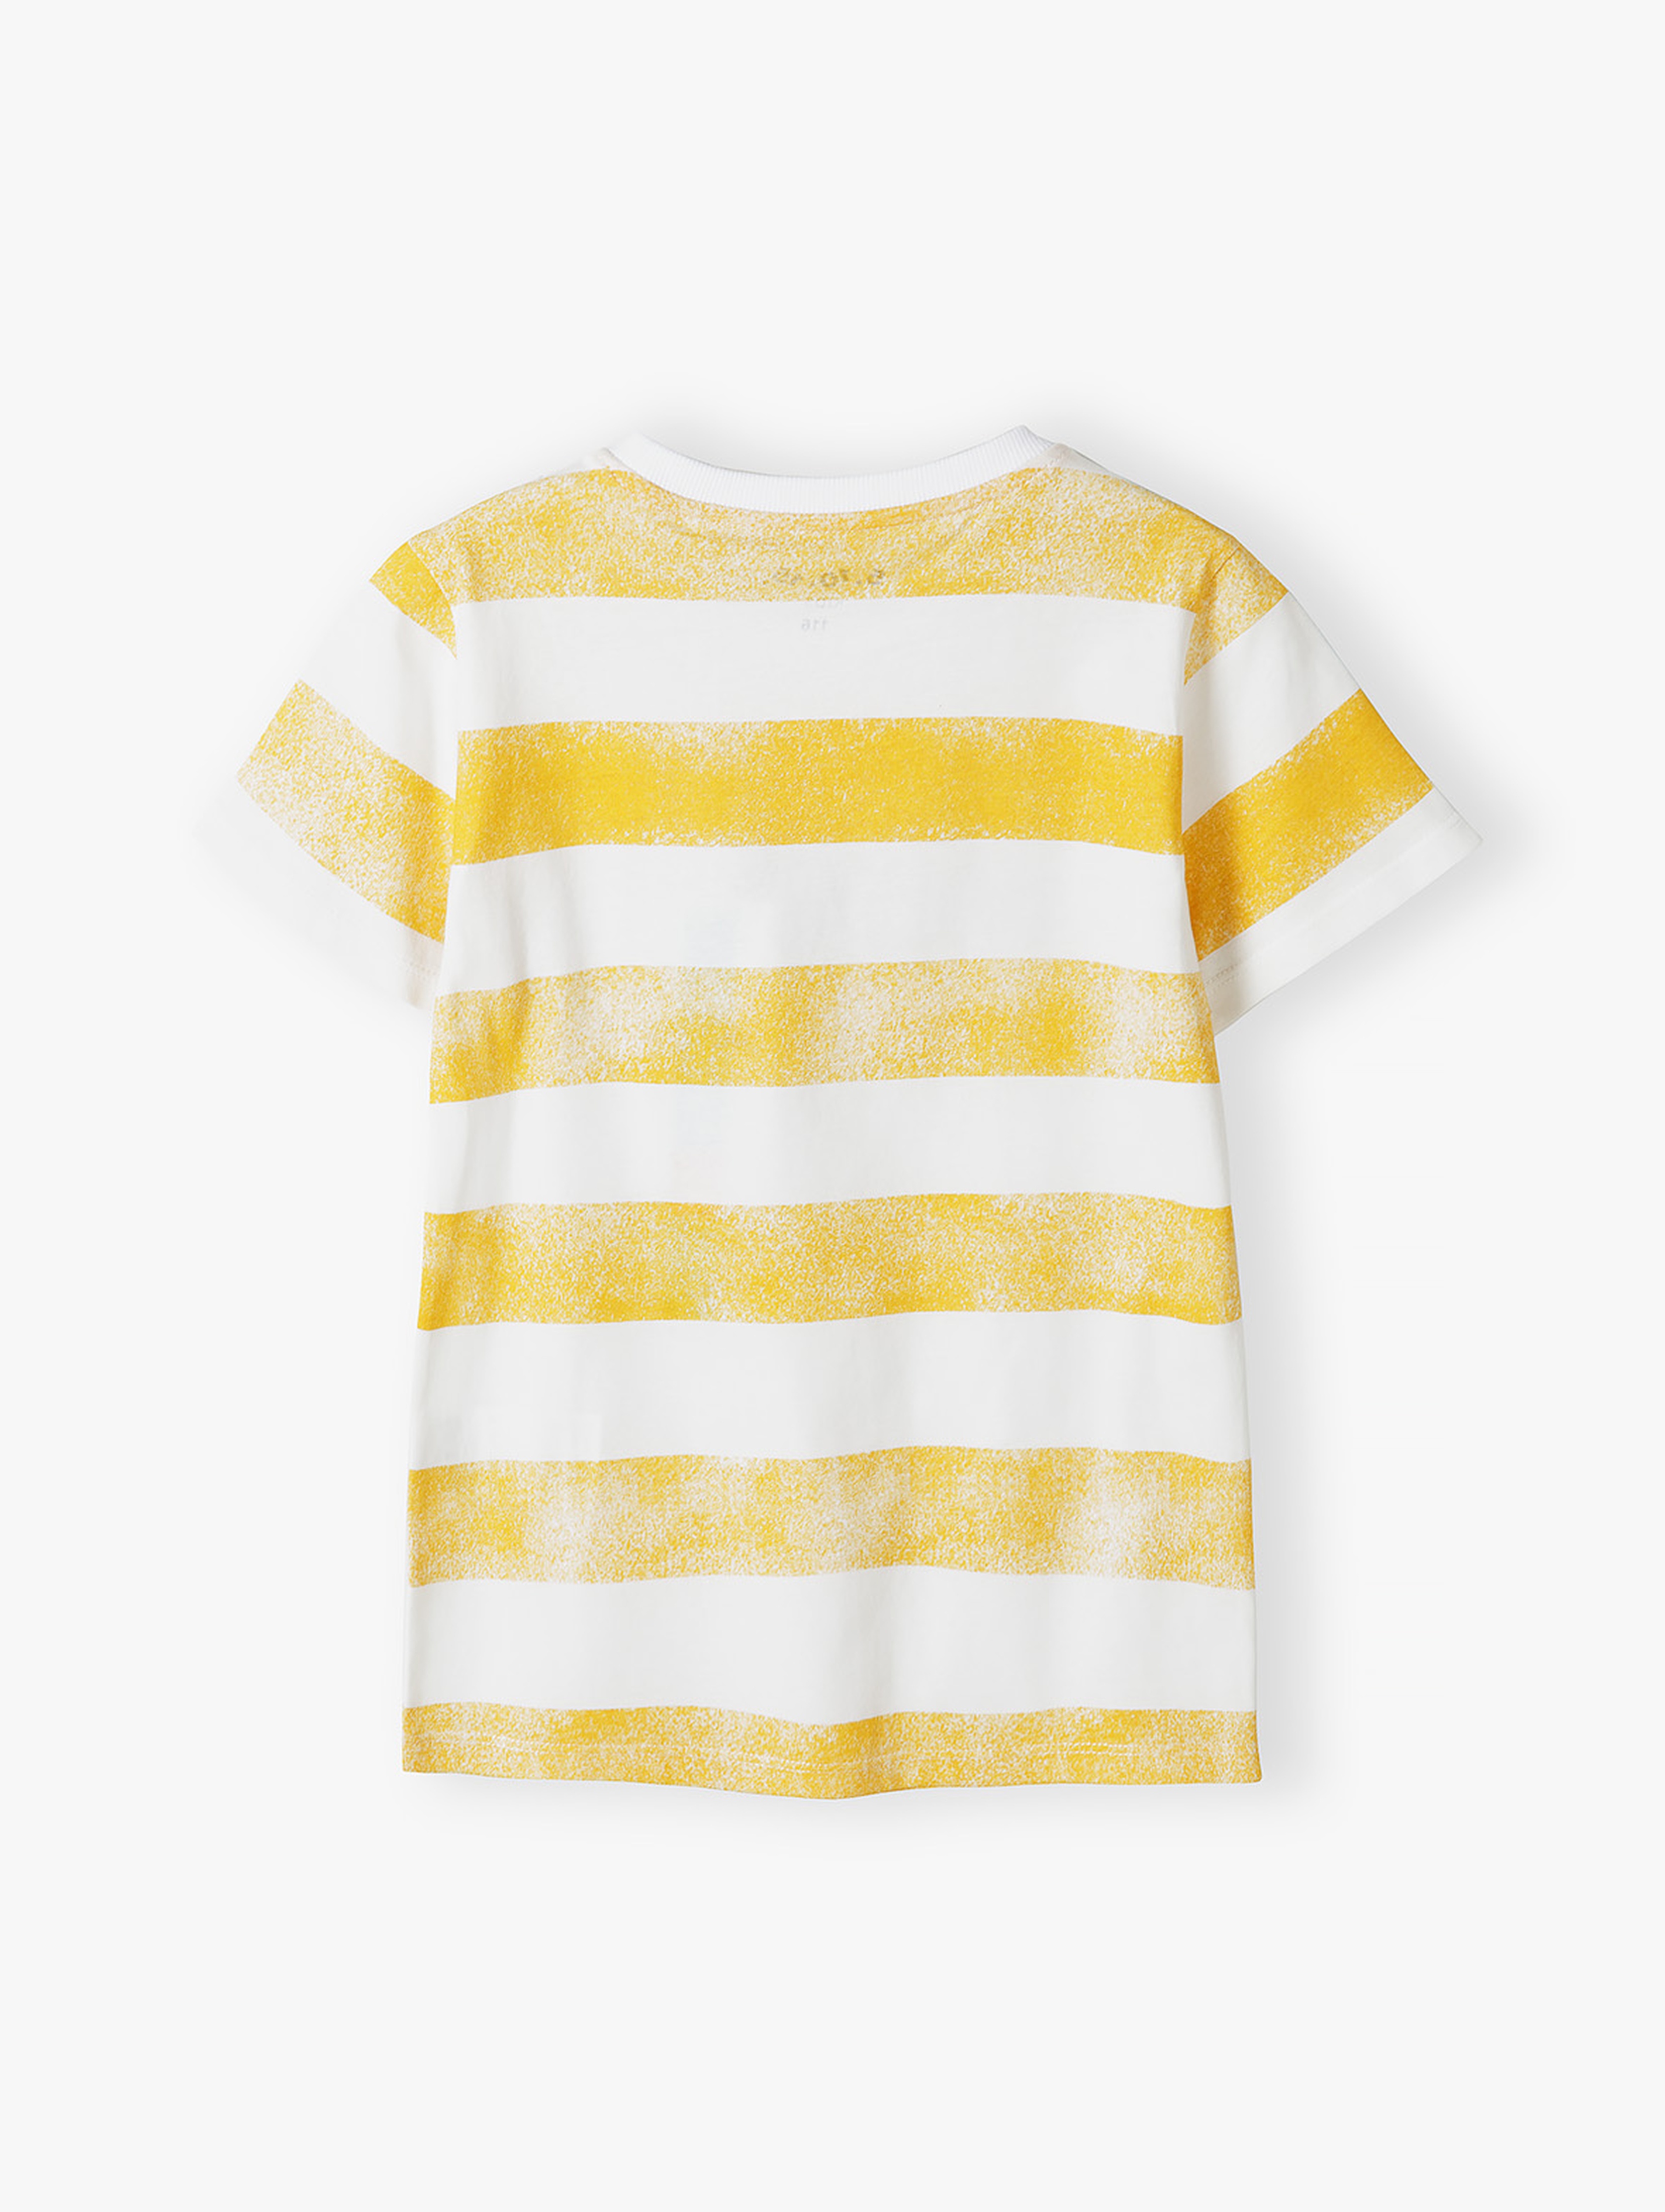 Biały t-shirt dla chłopca bawełniany w zółte paski - Psotnik